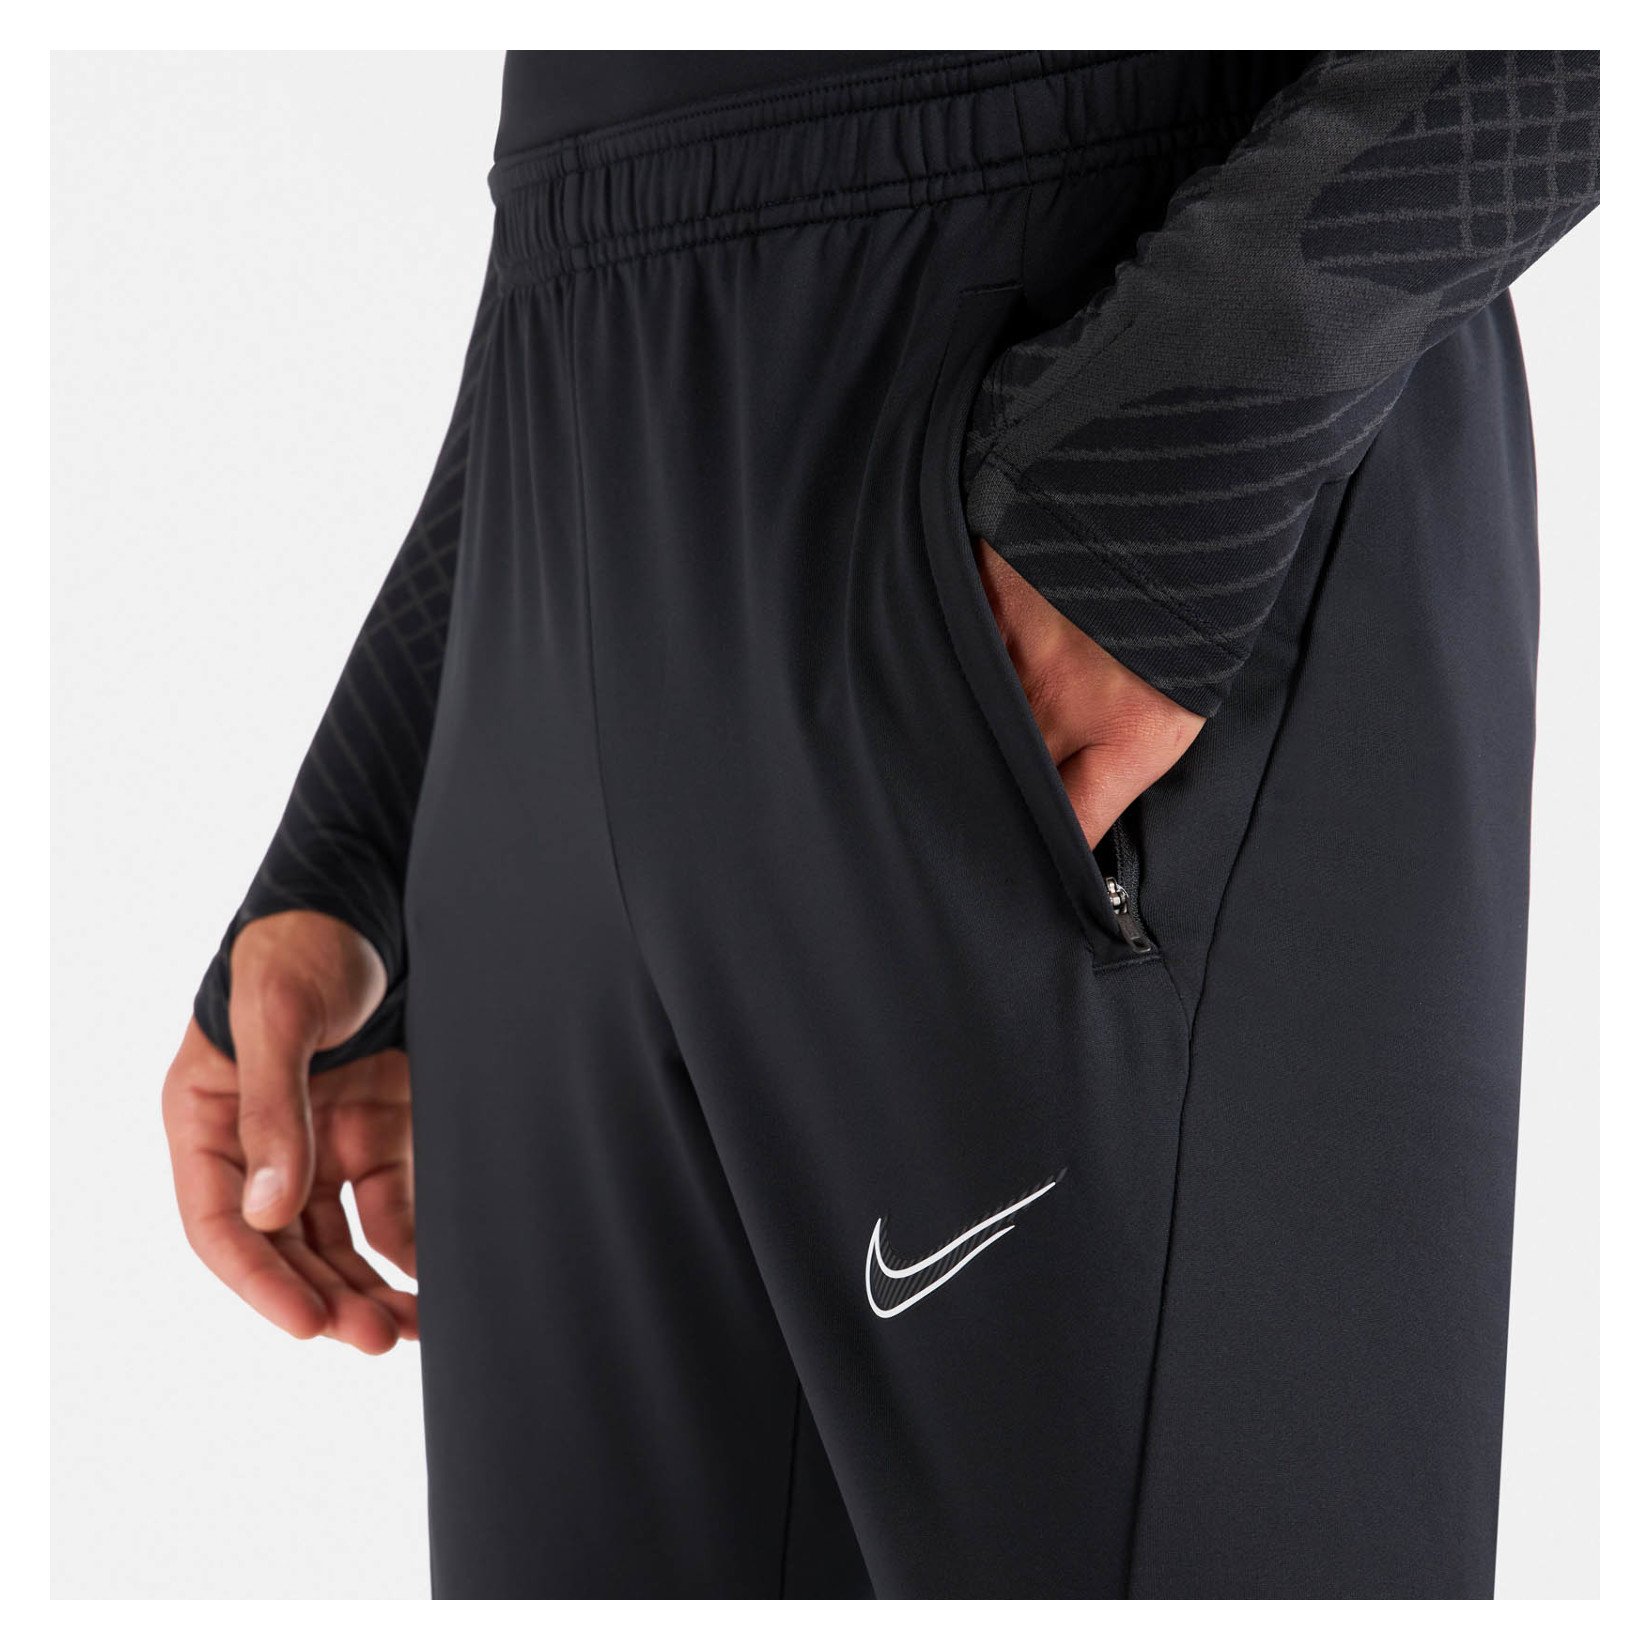 Nike Strike Tech Pants